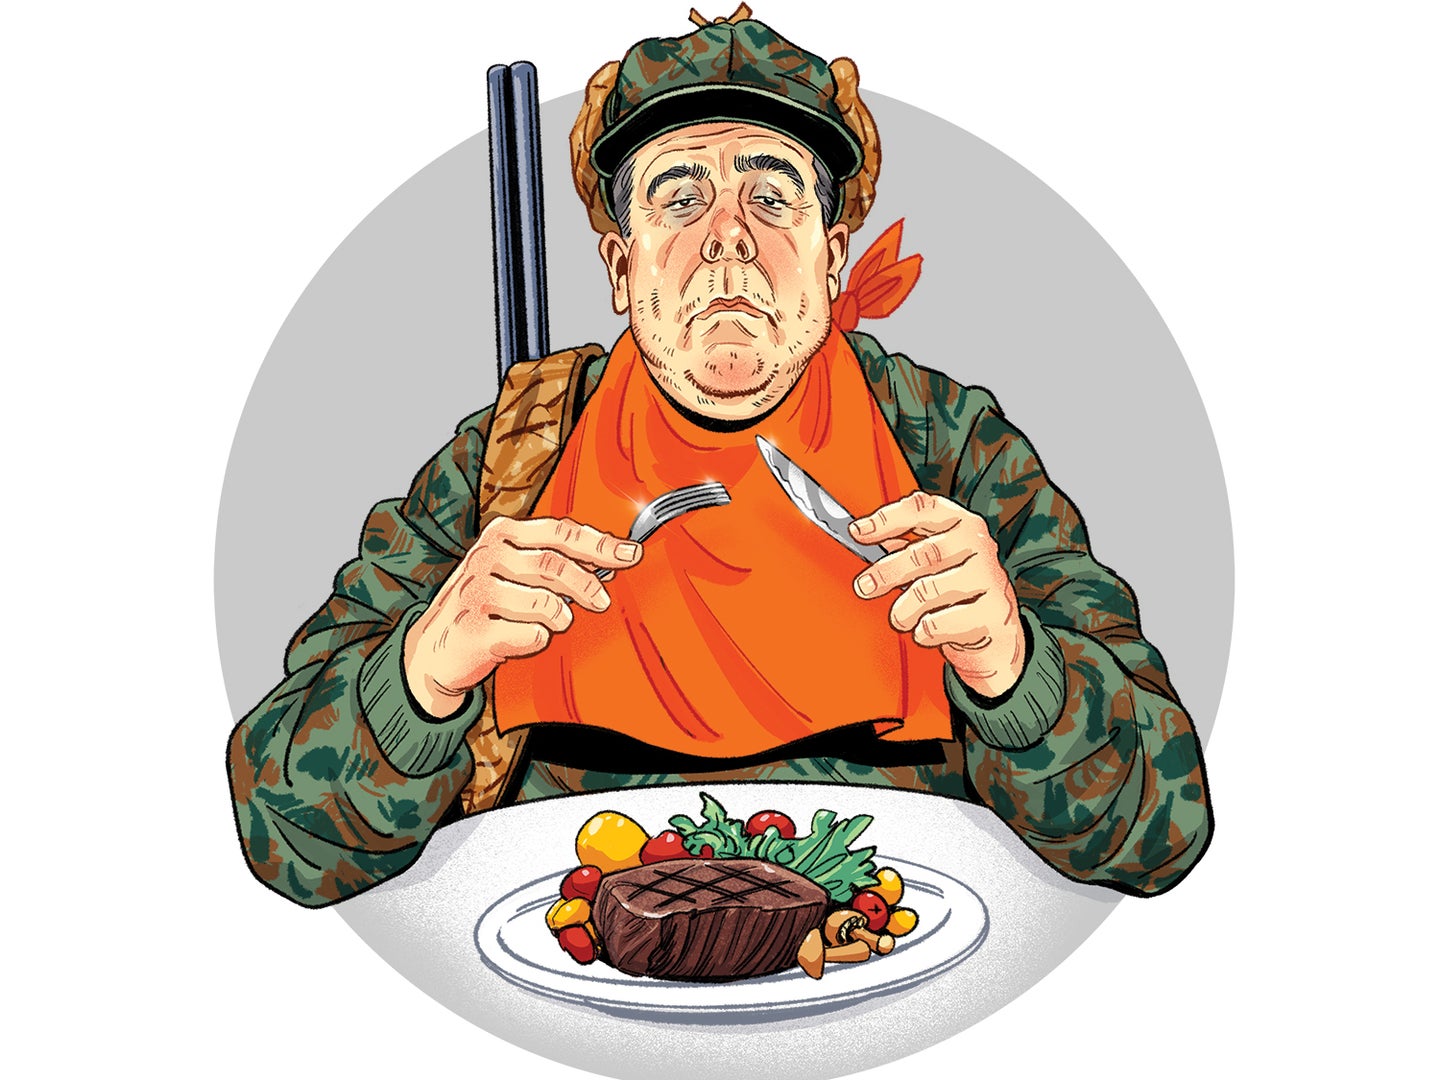 Illustration of a hunter eating a steak.